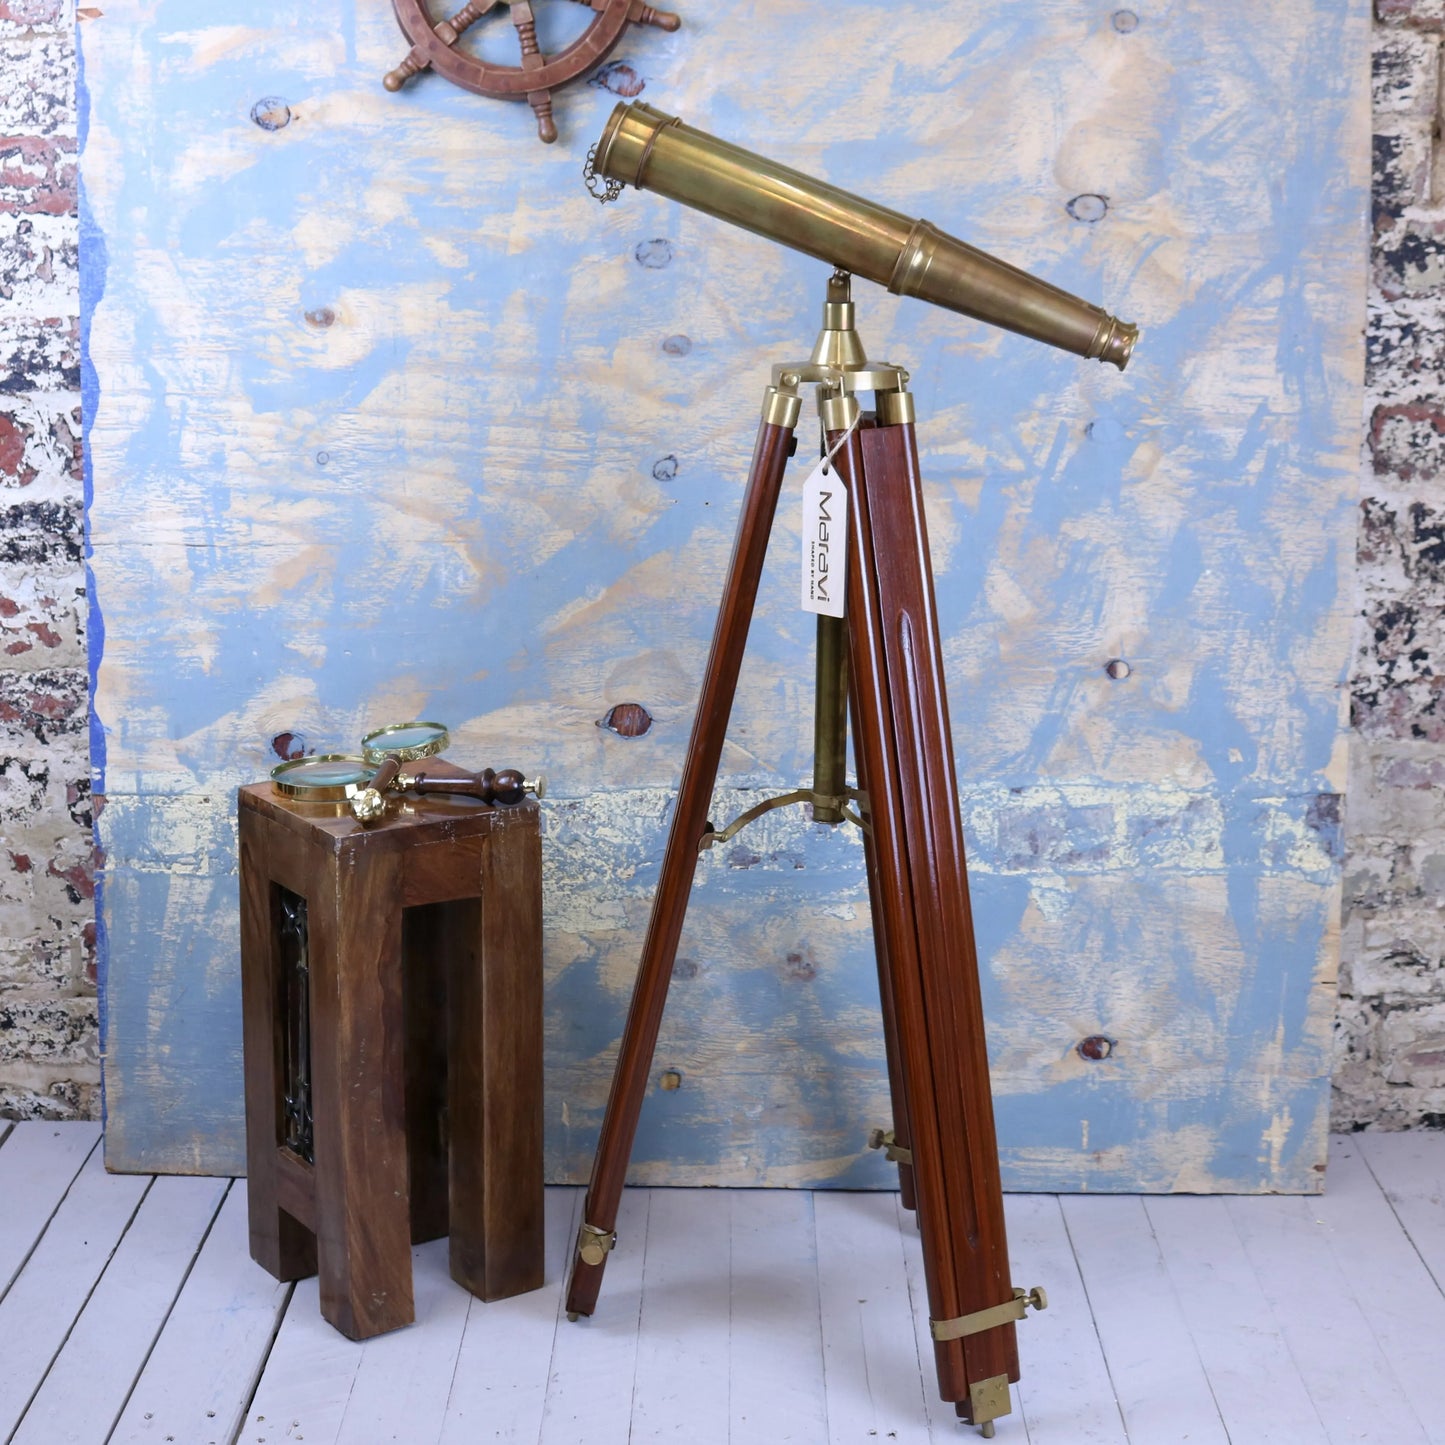 Mowai Vintage Binoculars on Tripod